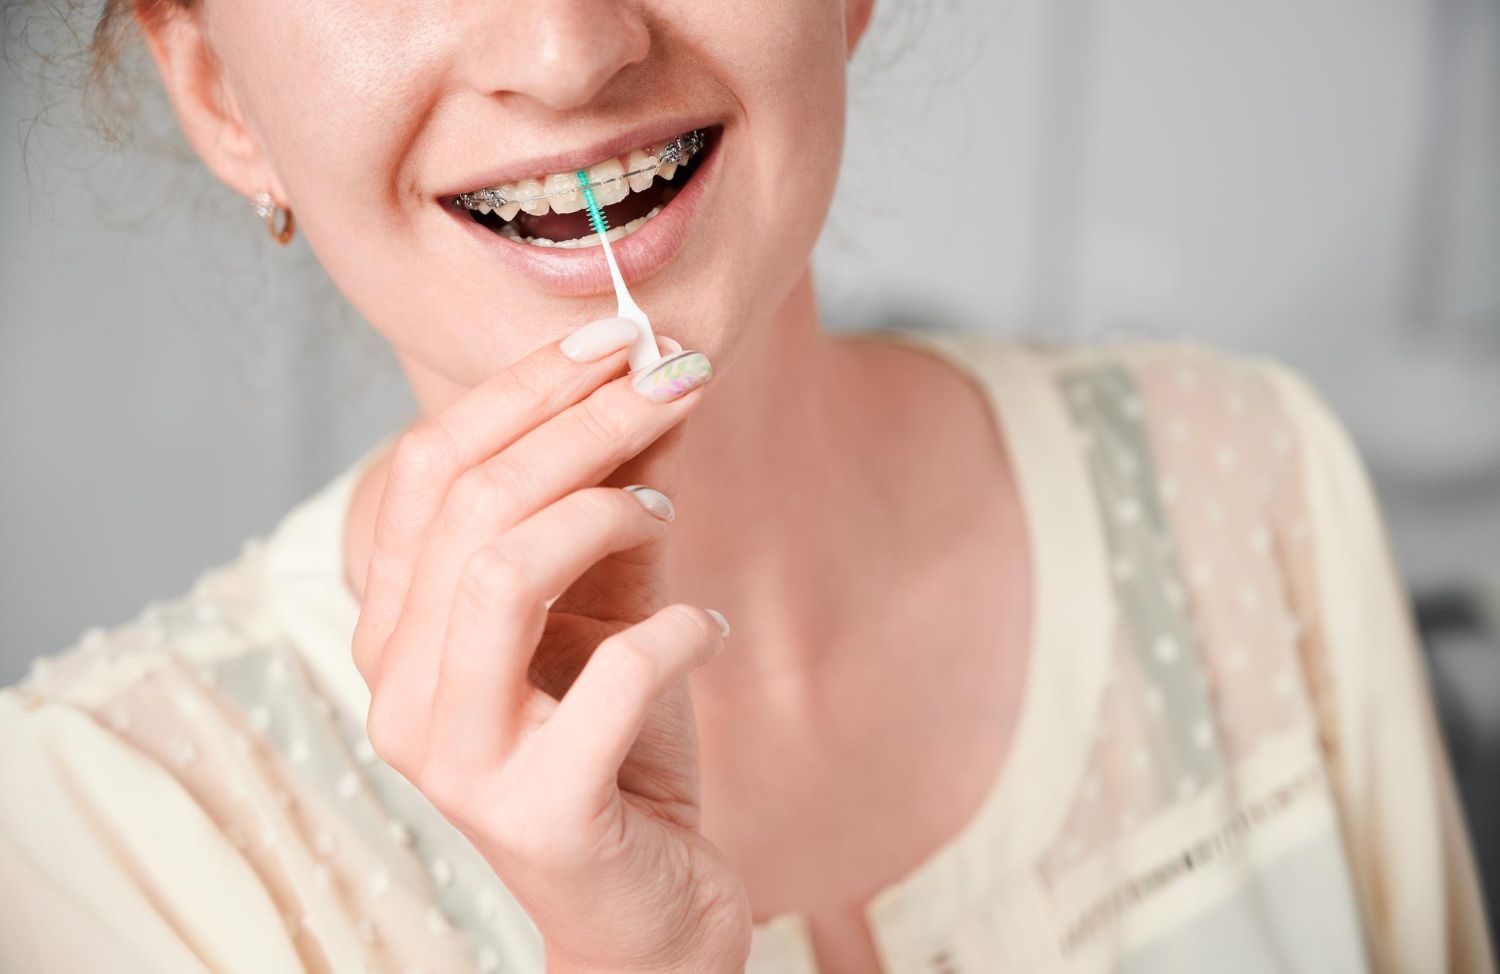 Cepillarse los dientes con brackets correctamente asegura una higiene oral óptima